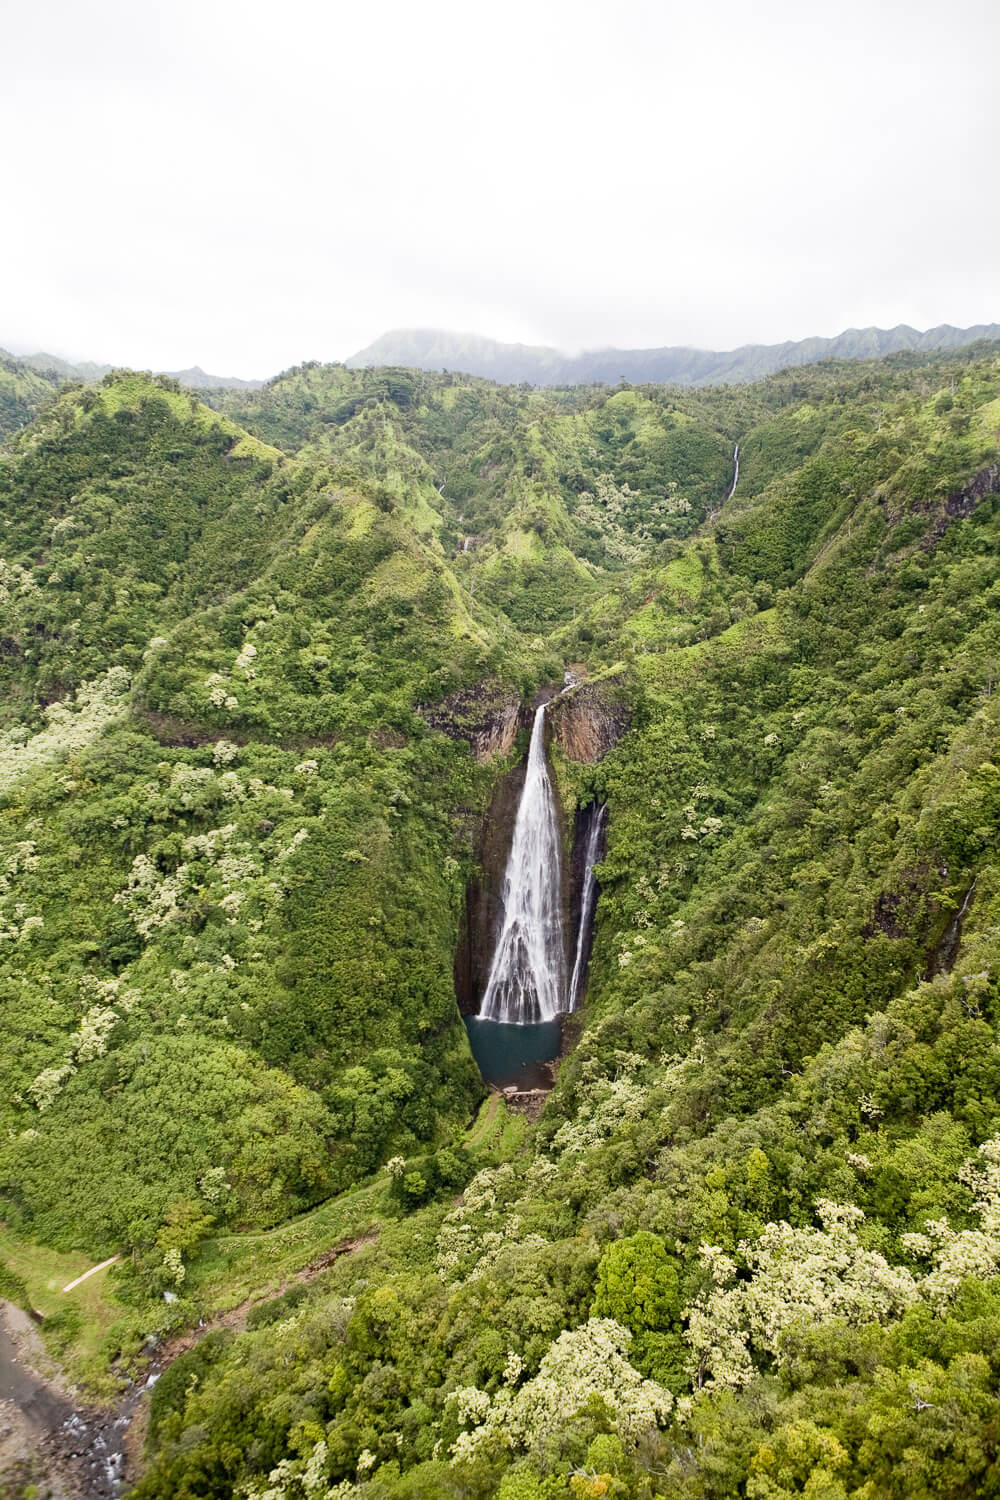  Kauai, Hawaii 